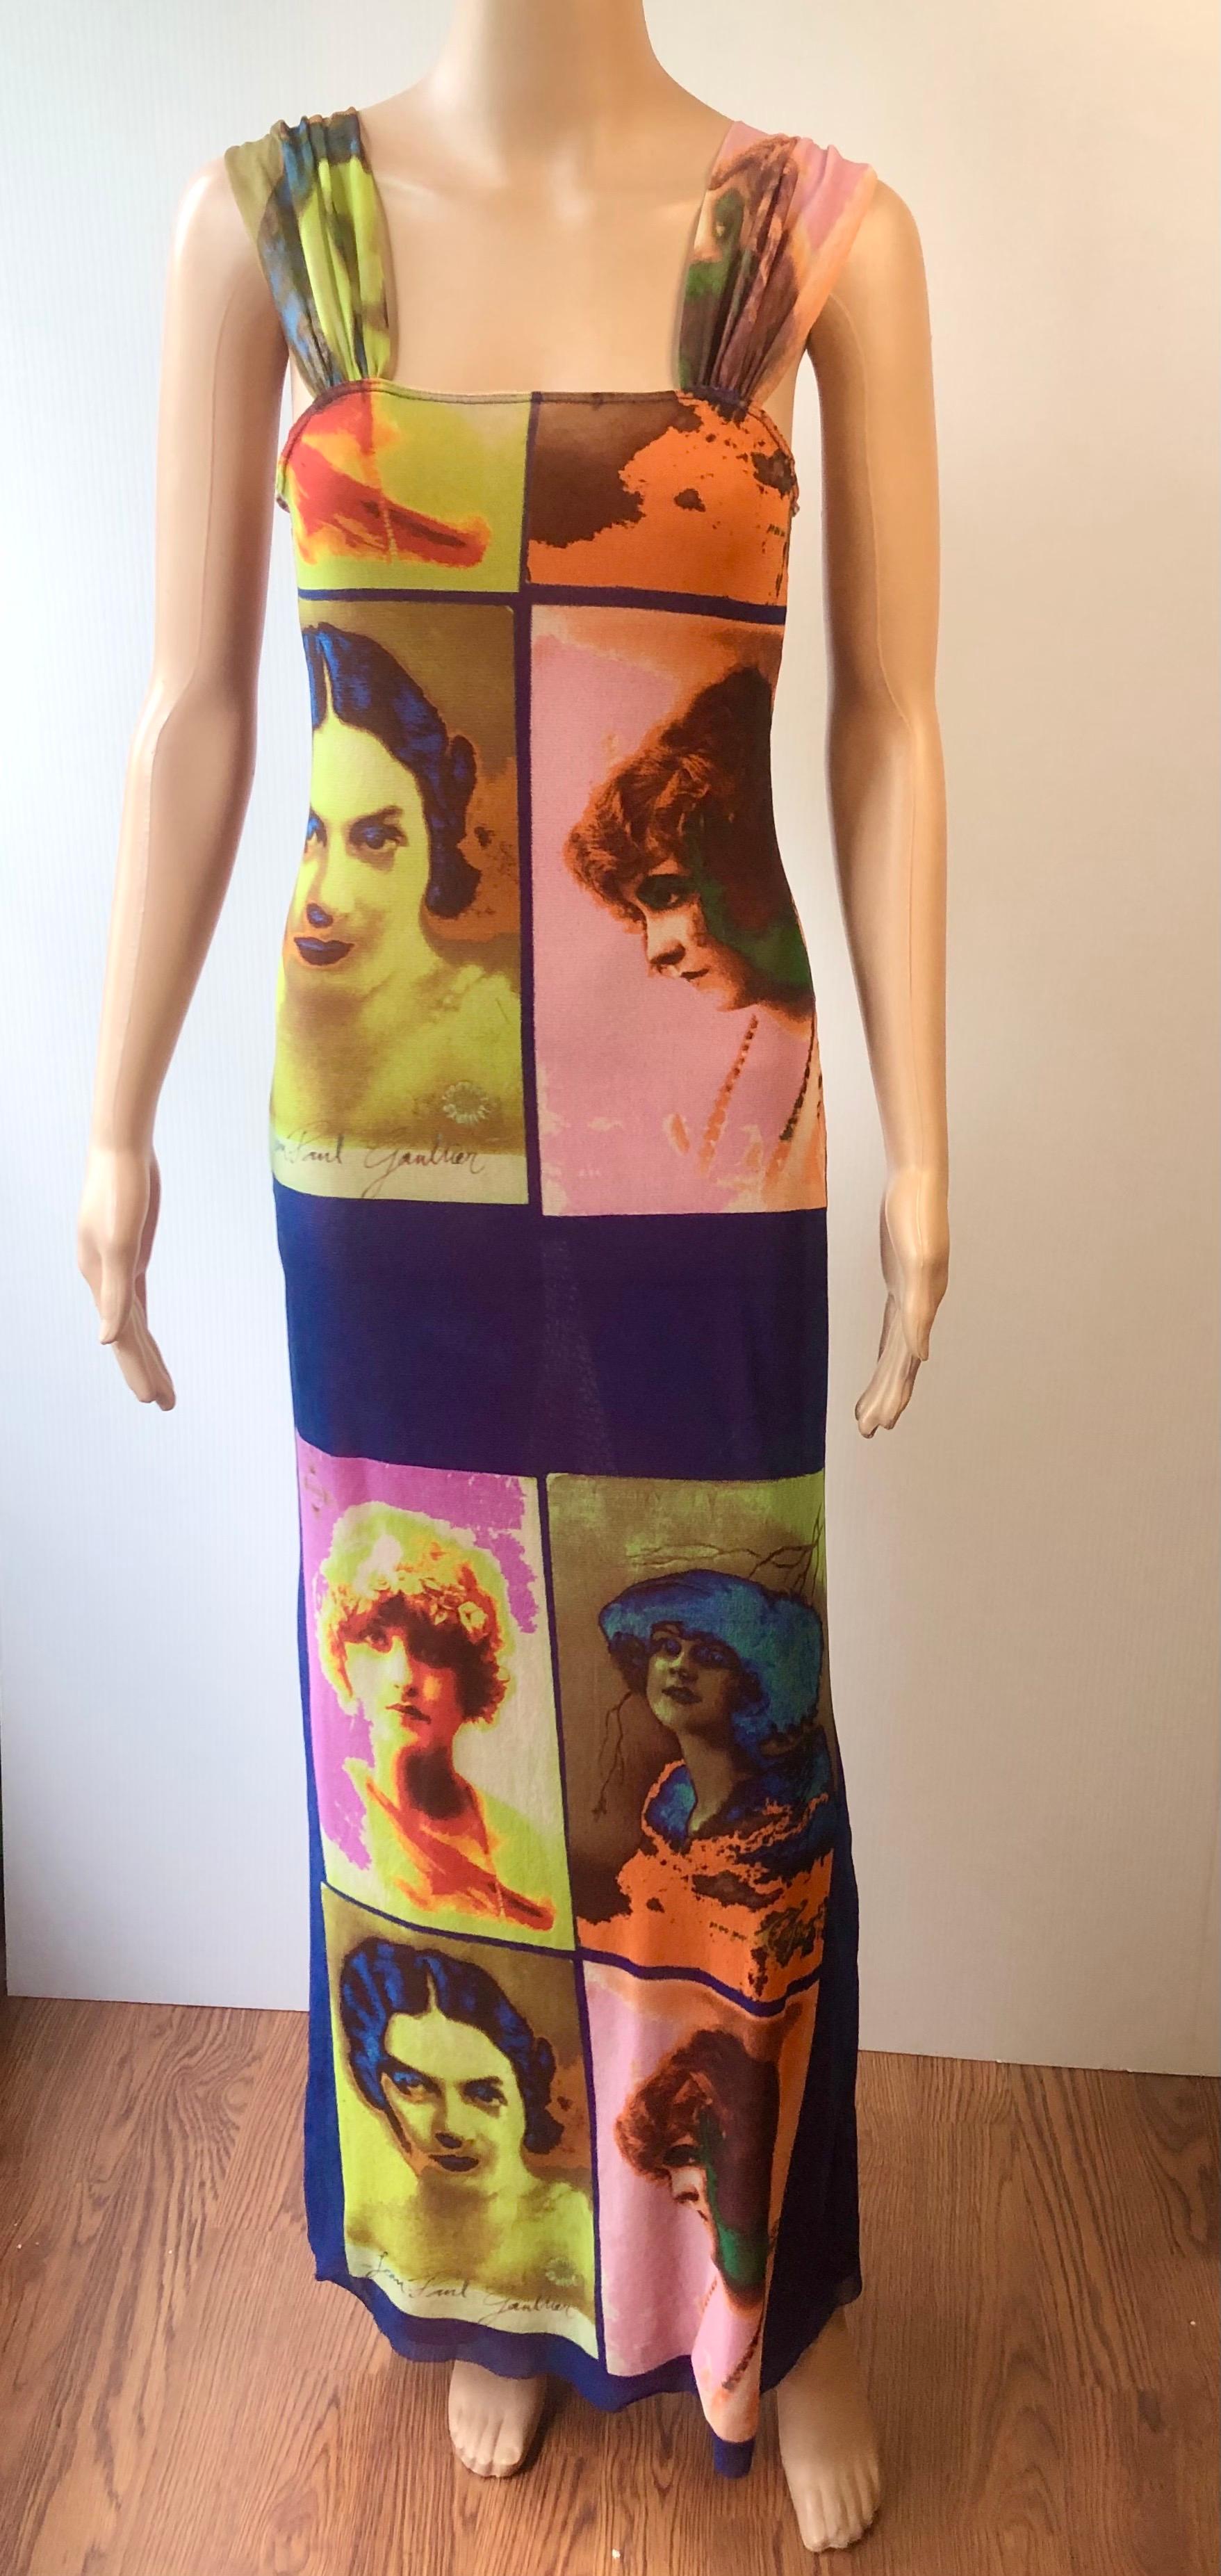 Brown Jean Paul Gaultier Soleil S/S 2002 Vintage “Portraits” Mesh Maxi Dress  For Sale